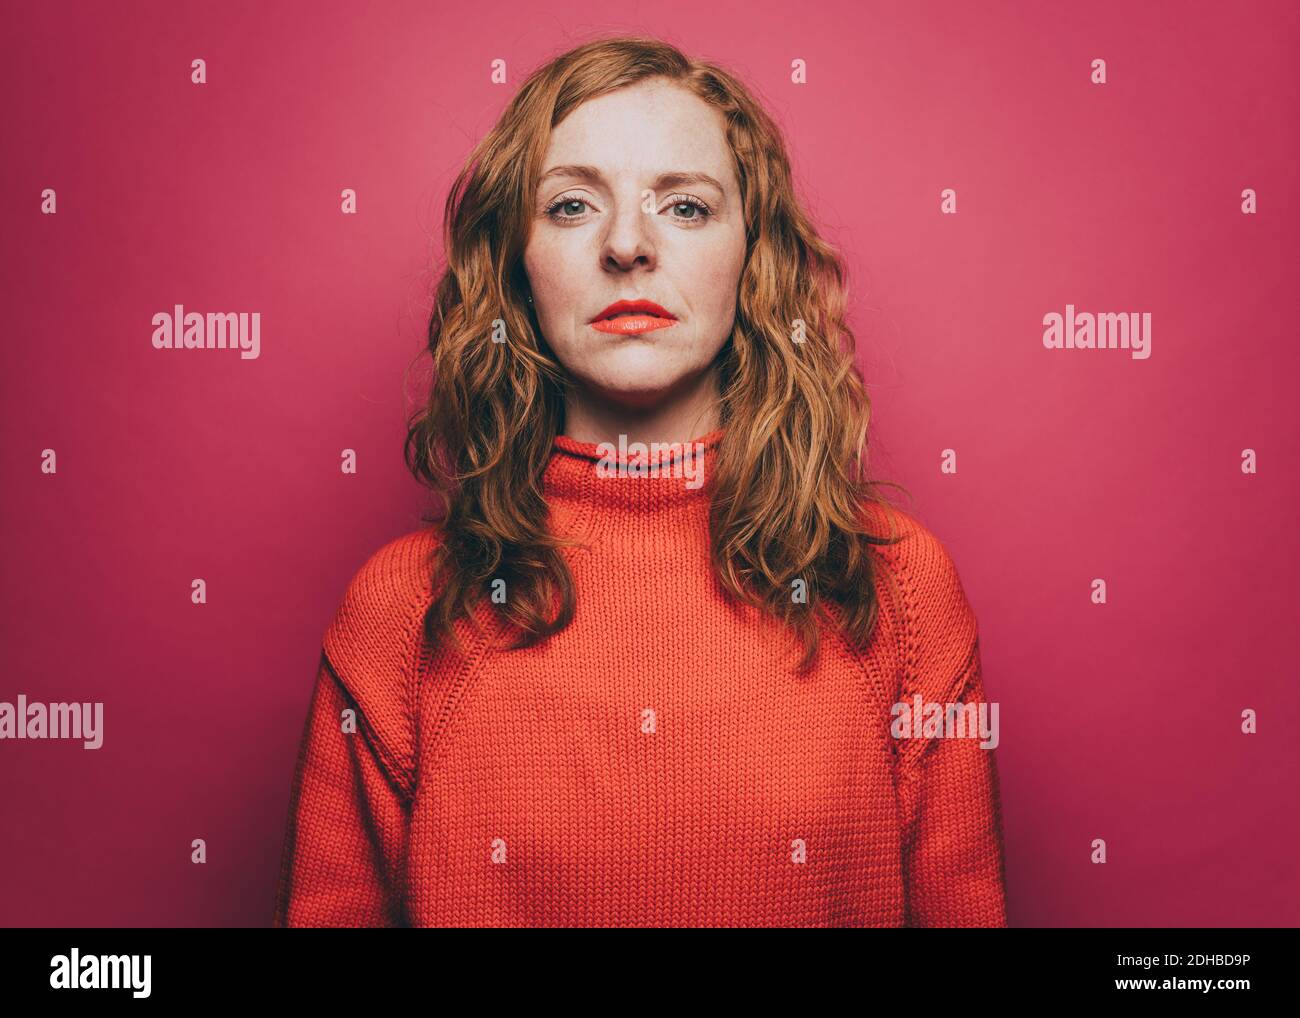 Porträt von selbstbewussten Frau in orange oben auf rosa Hintergrund Stockfoto